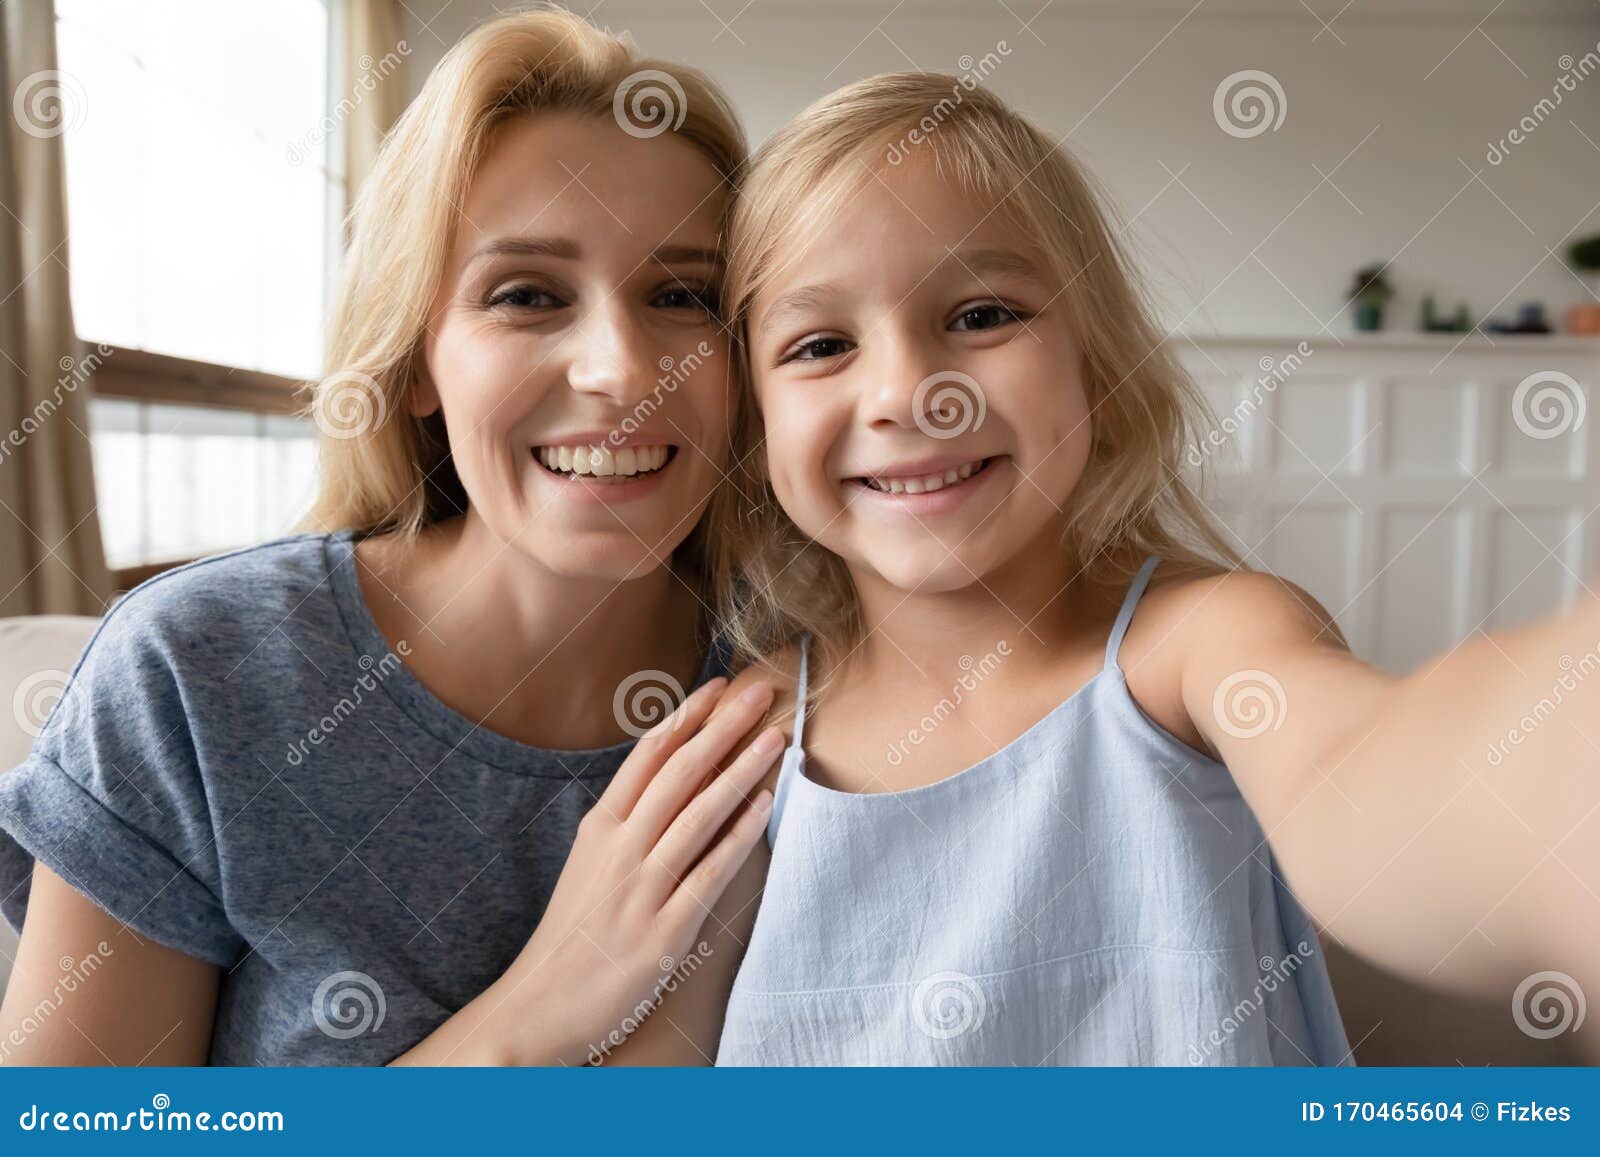 幼女与有魅力的年幼母亲自拍库存照片 图片包括有幼女与有魅力的年幼母亲自拍